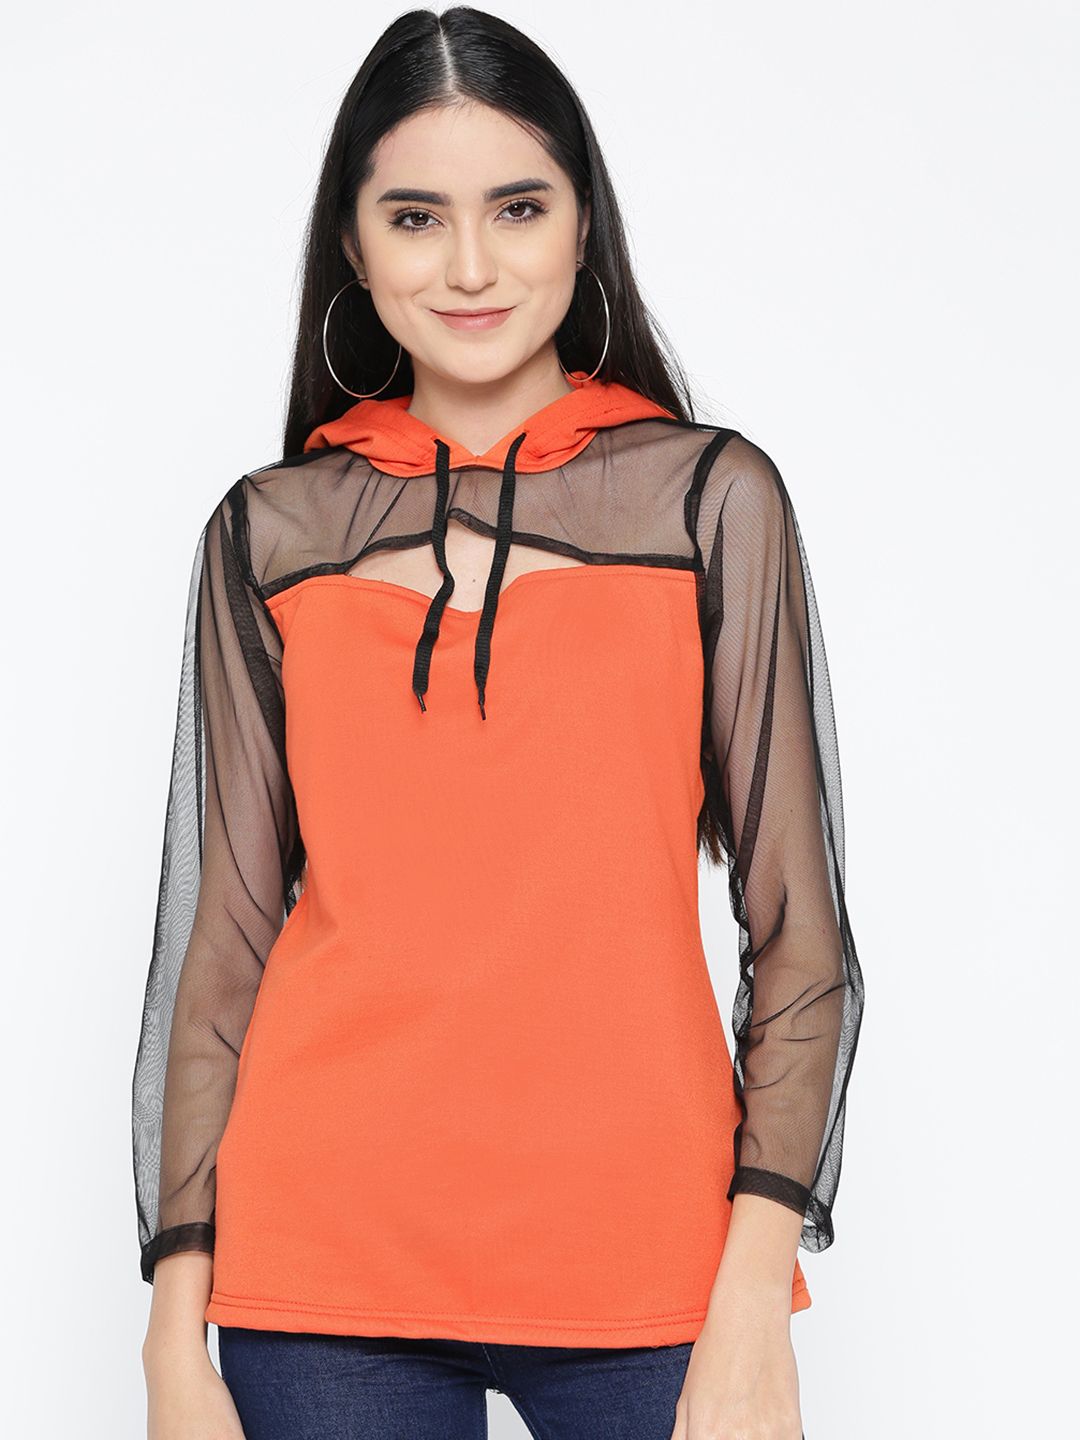 Belle Fille Women Orange & Black Semi-Sheer Solid Hooded Sweatshirt Price in India